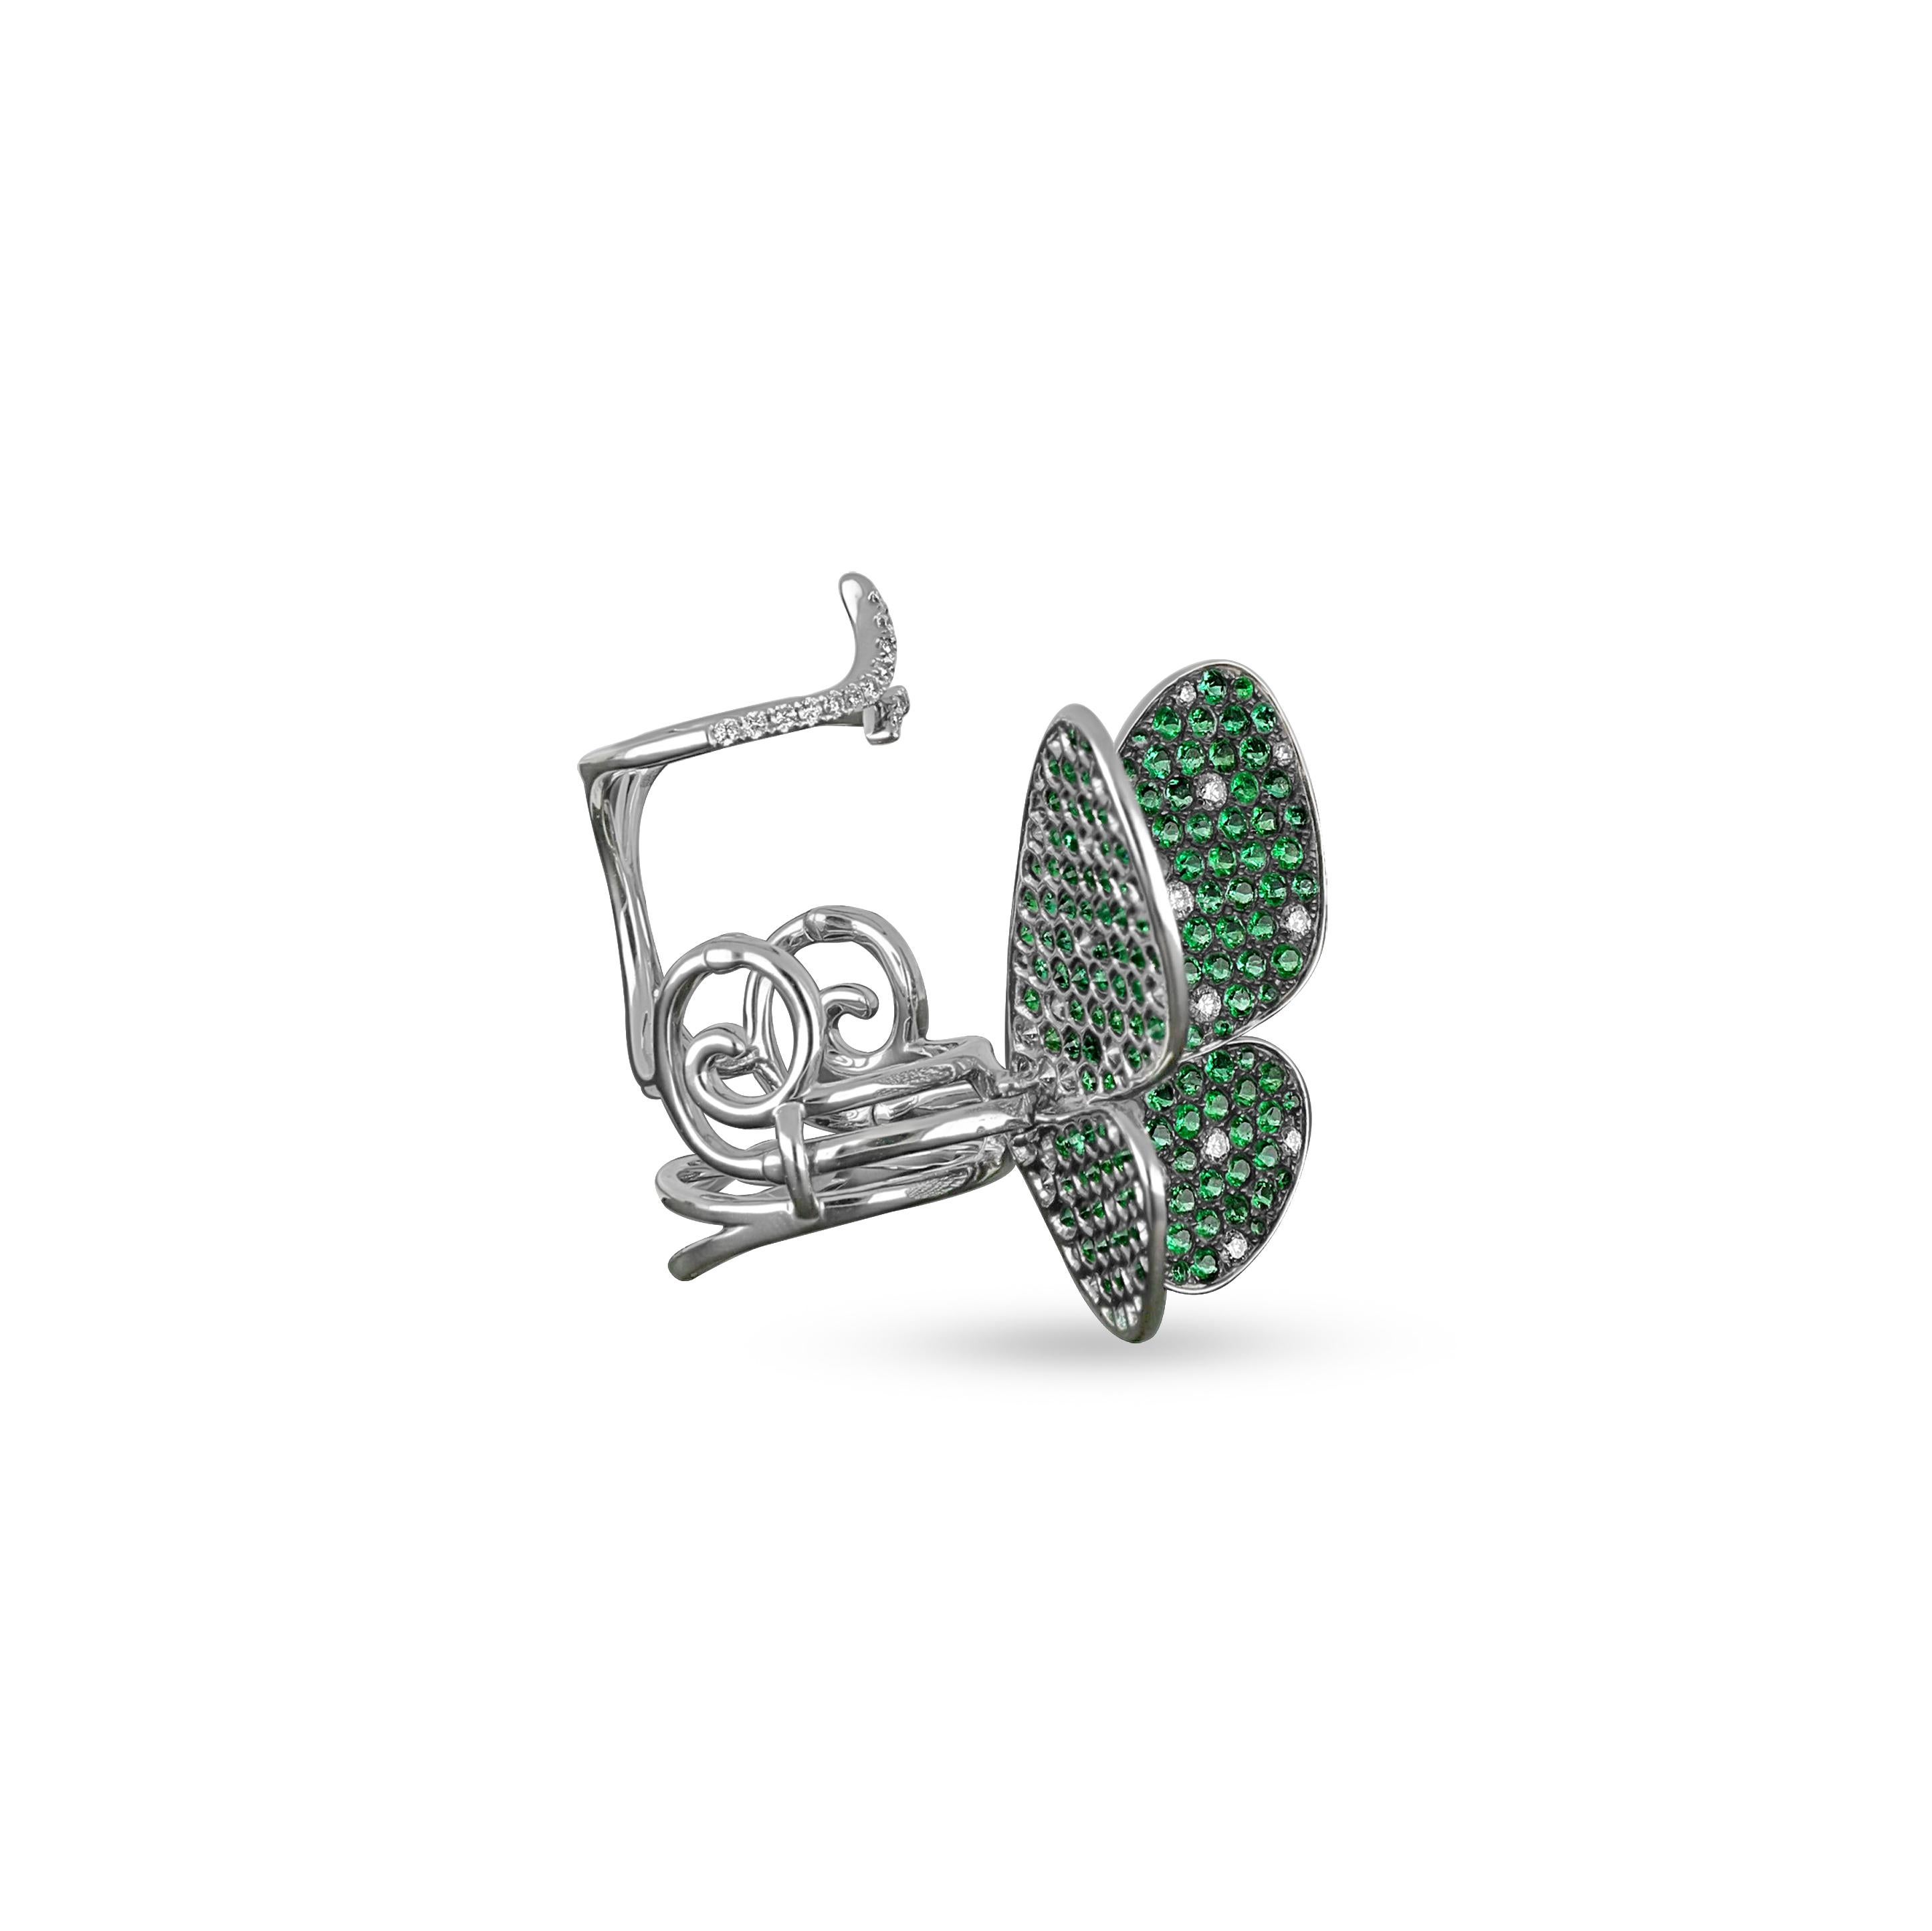 Elle présente un motif papillon ludique serti de diamants de taille ronde et de saphirs verts. La charmante bague Amwaj capture la beauté des ailes de papillon créées dans des rangées brillantes de diamants et de saphirs sertis dans de l'or blanc 18